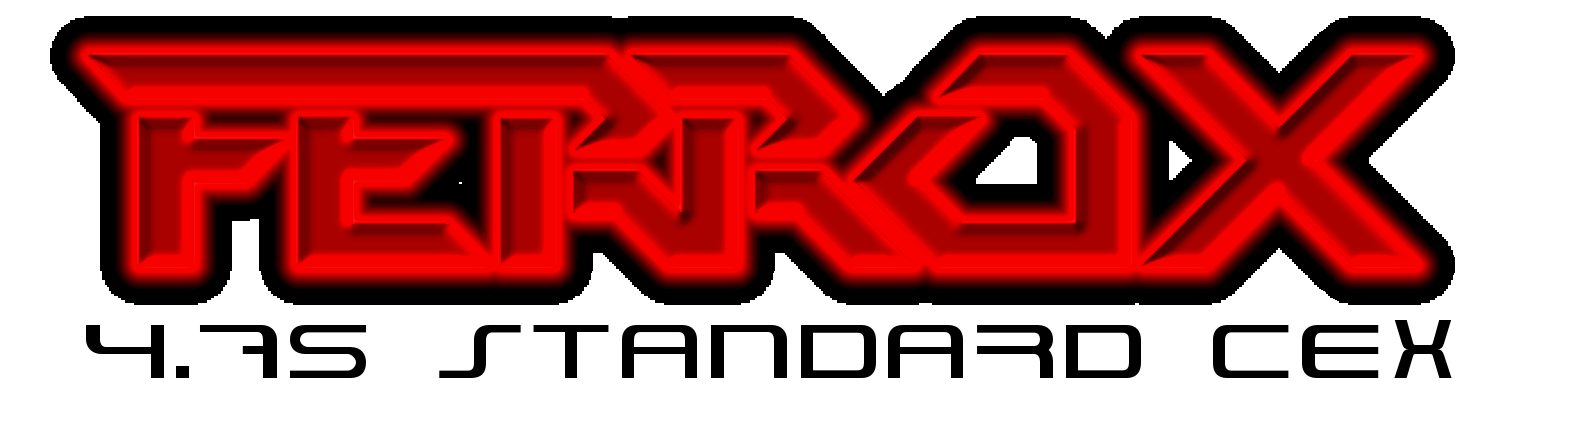 Marapat nobd iac kz. Ps3 CFW логотип. Codebreakers лого. Феррокс.